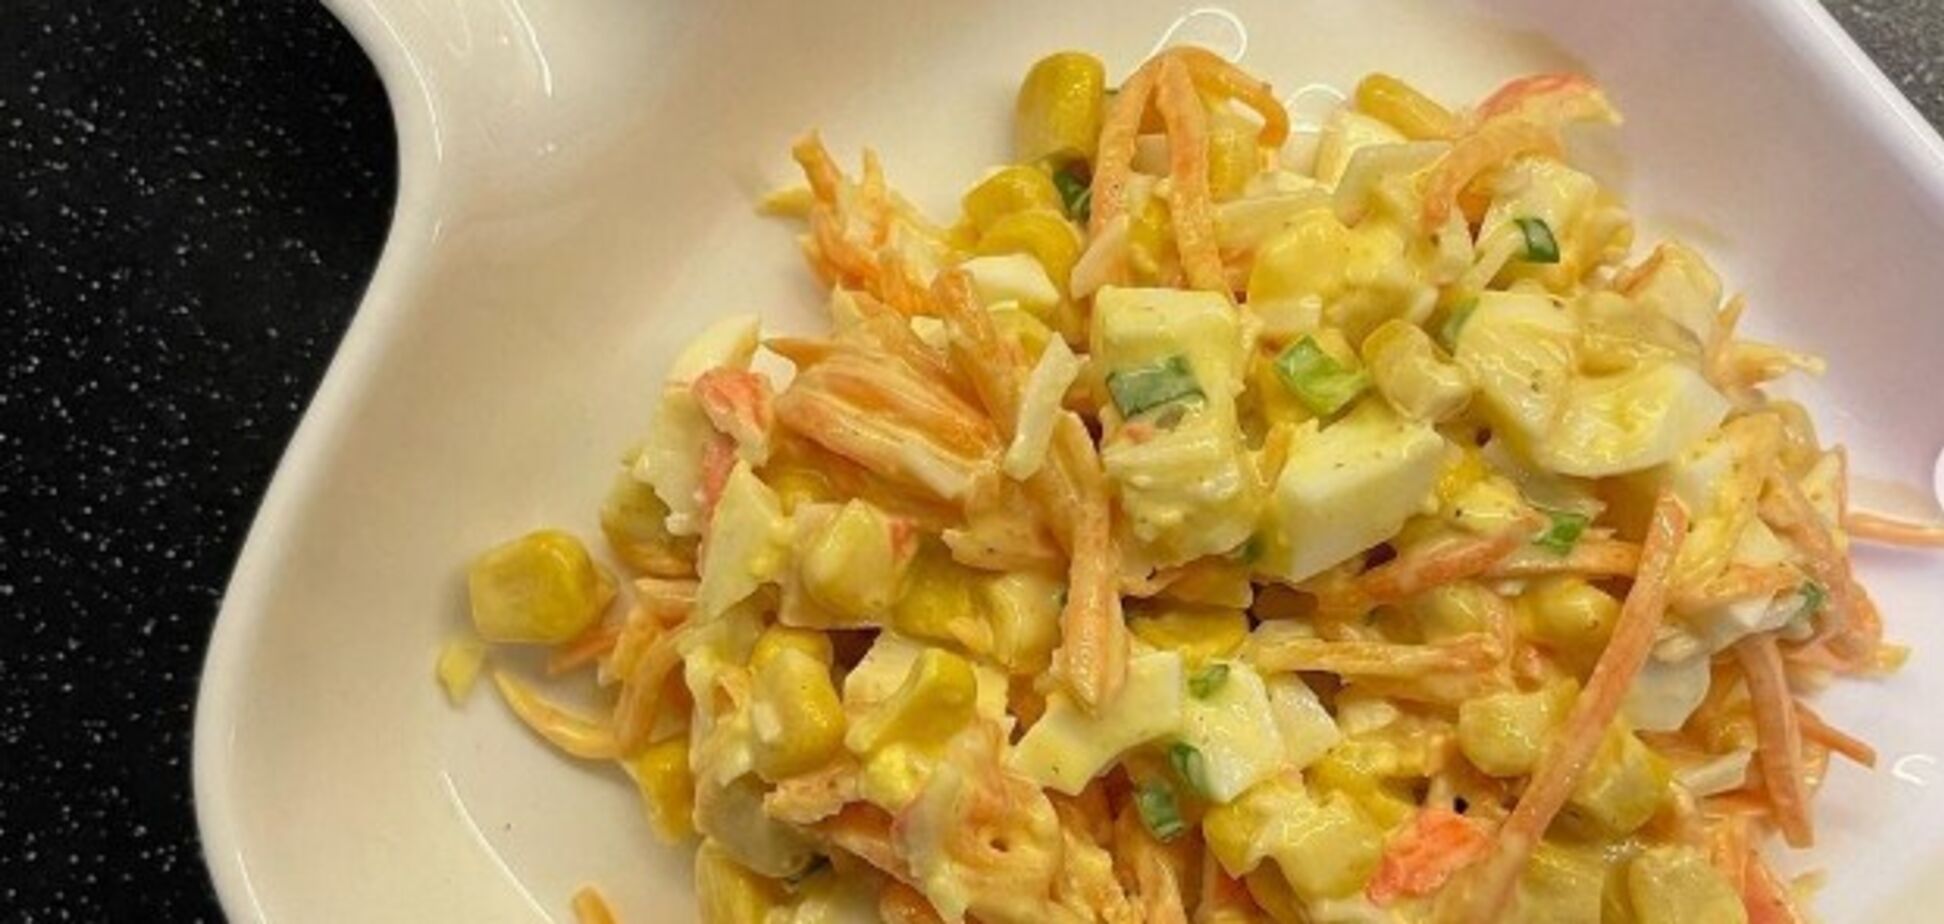 Без огурцов и риса: как приготовить крабовый салат с майонезом по-новому